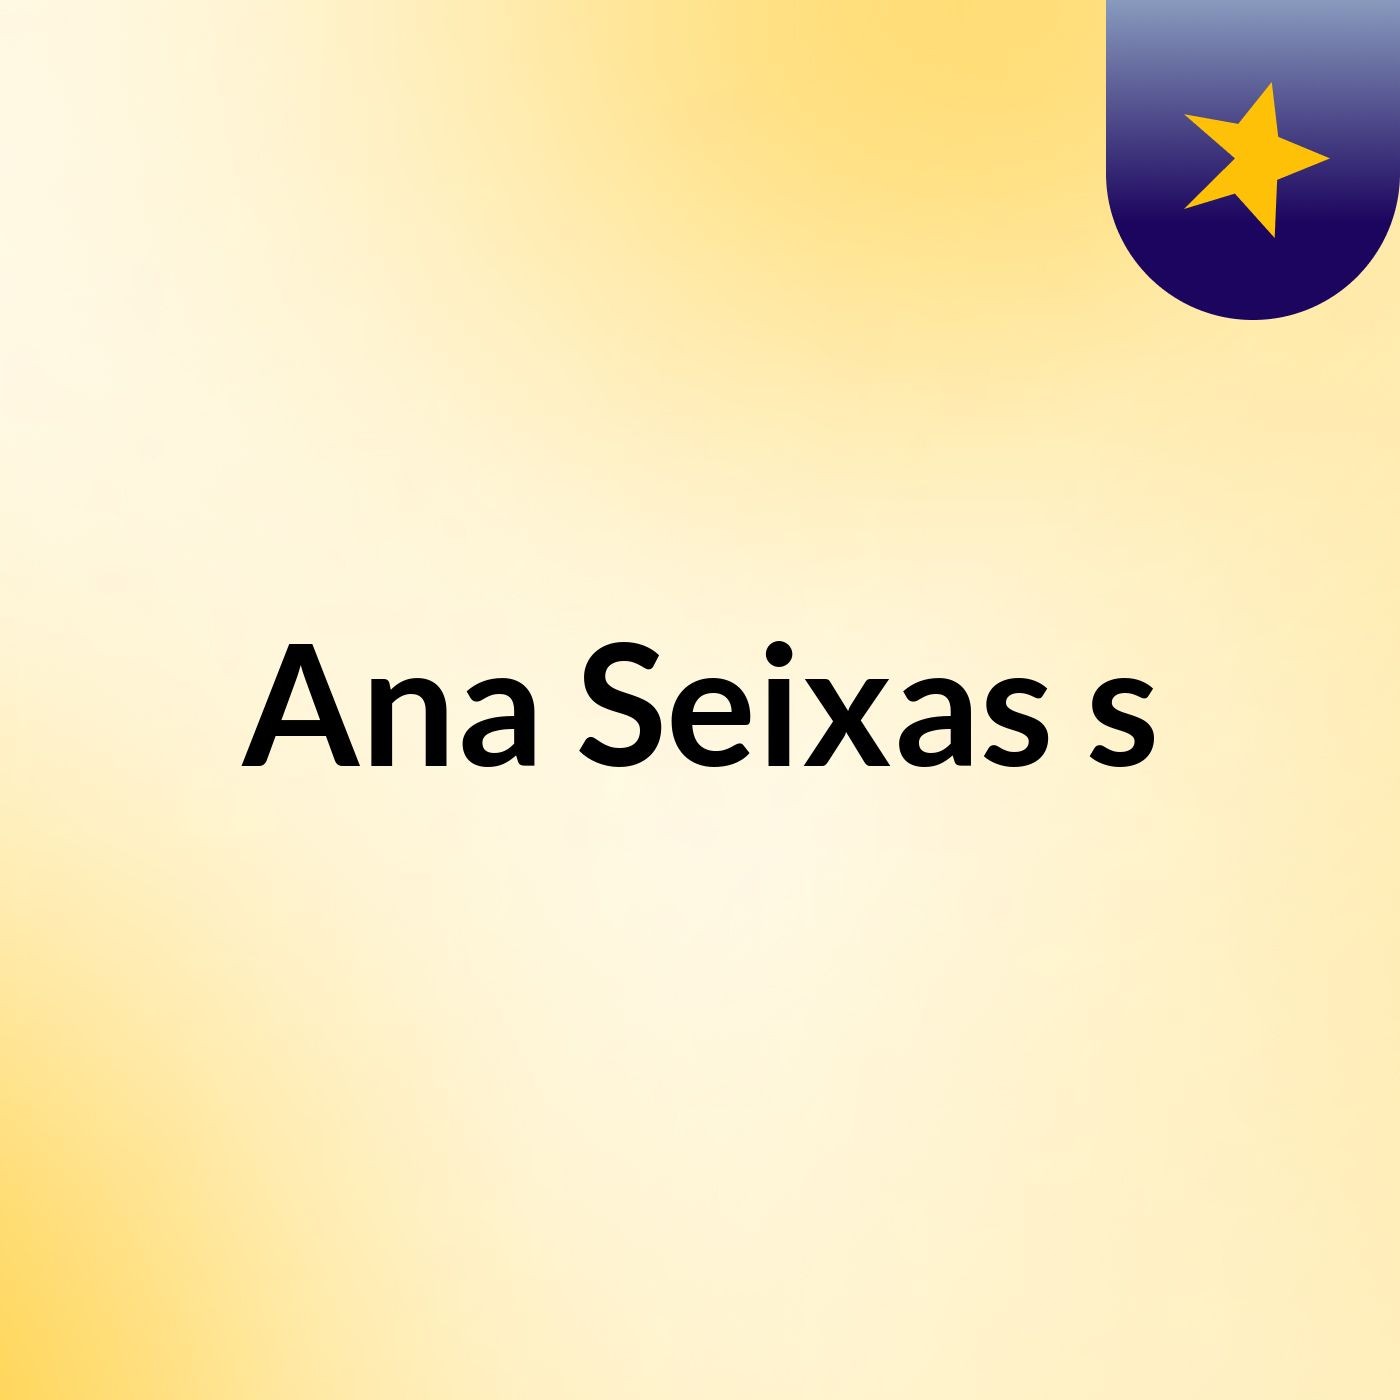 Ana Seixas's